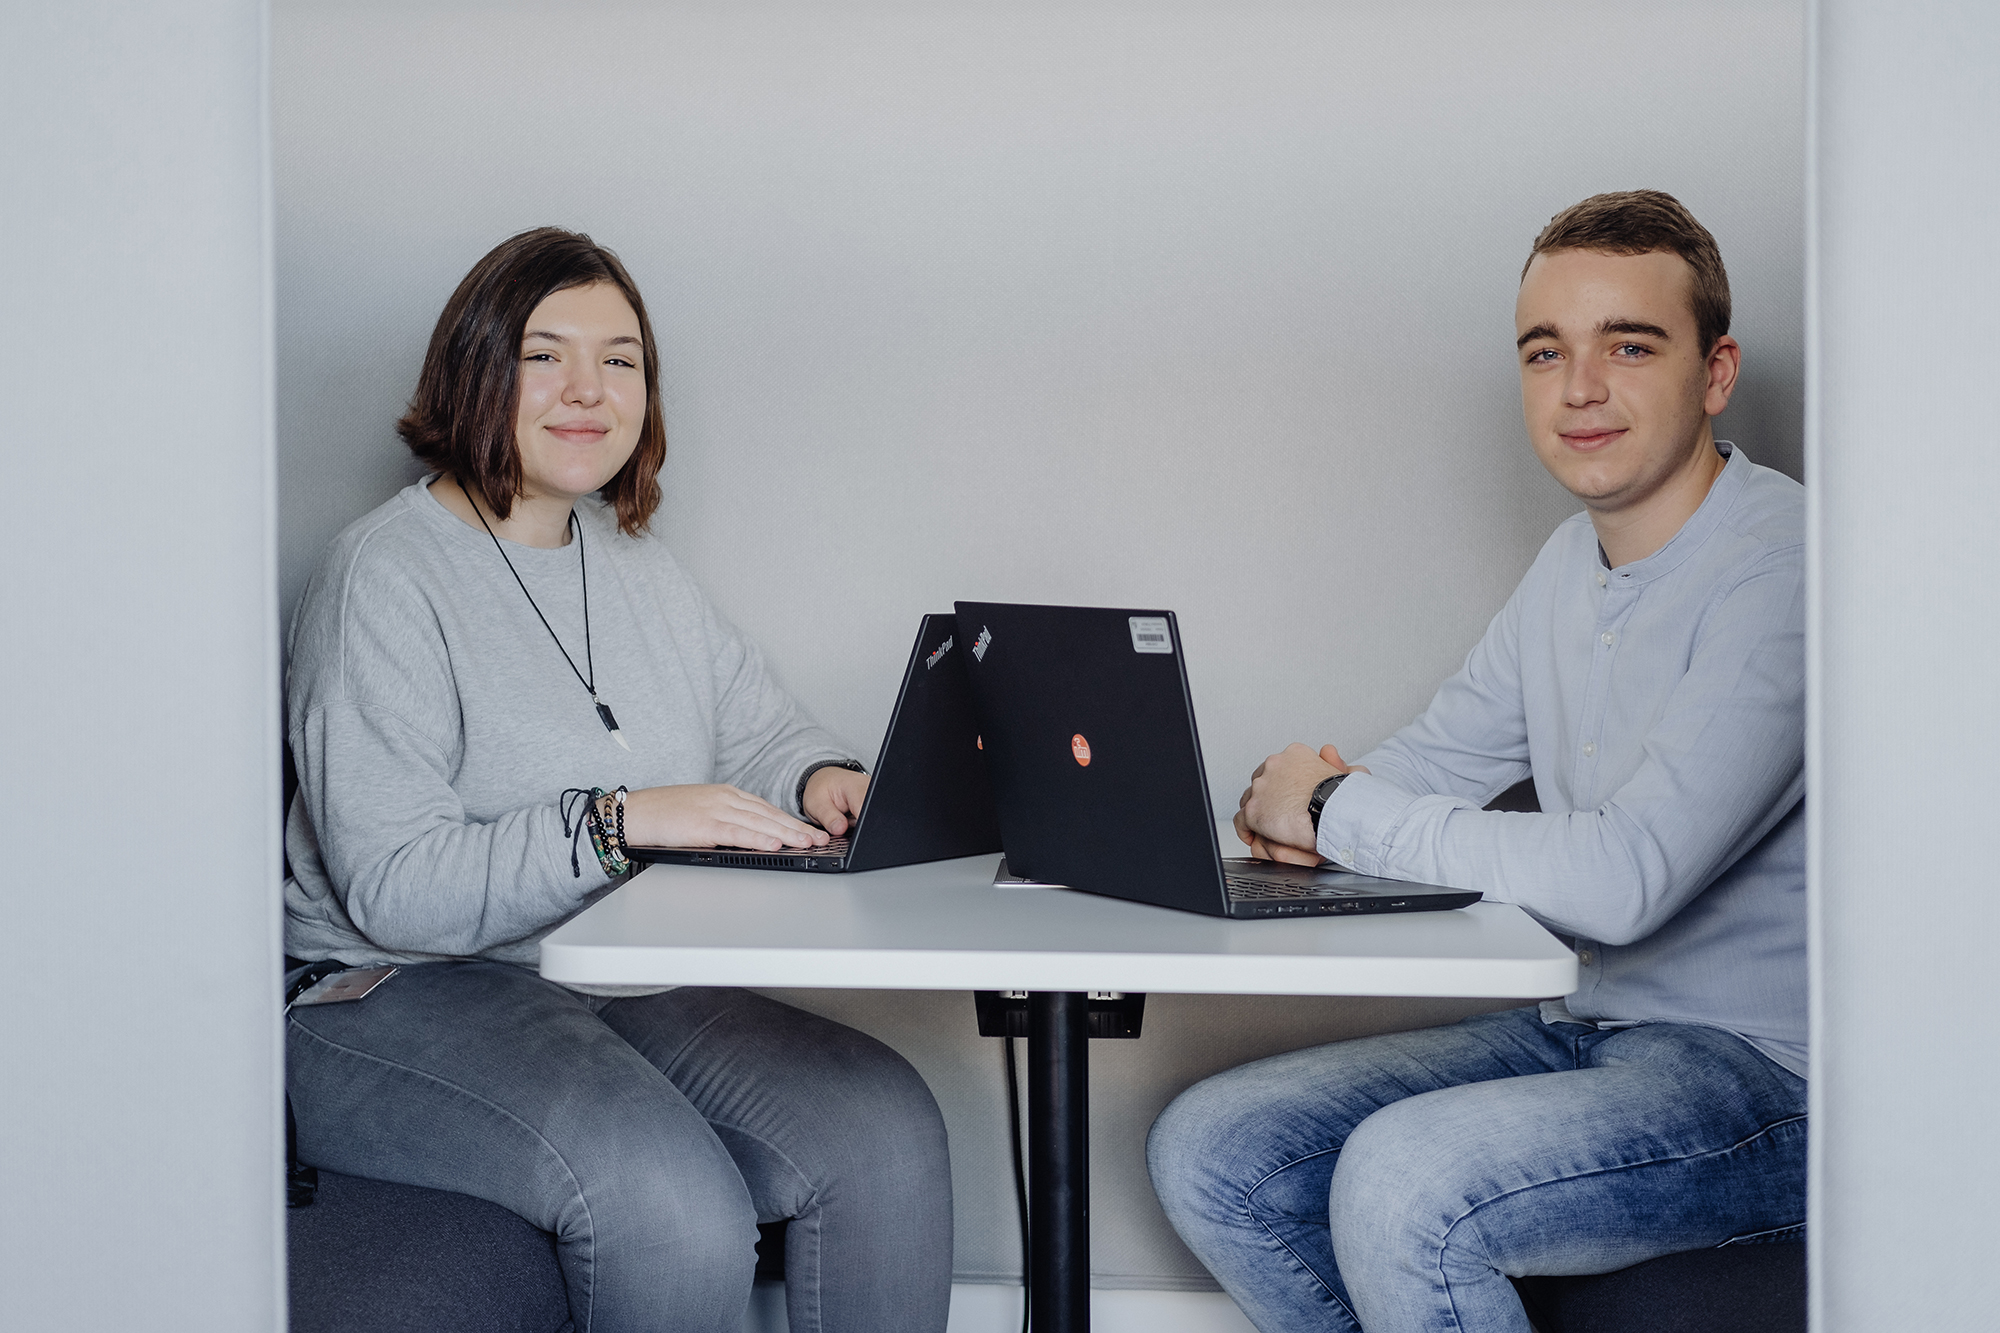 Zwei Mitarbeiter:innen sitzen zusammen an einem Tisch und arbeiten an ihren Laptops.